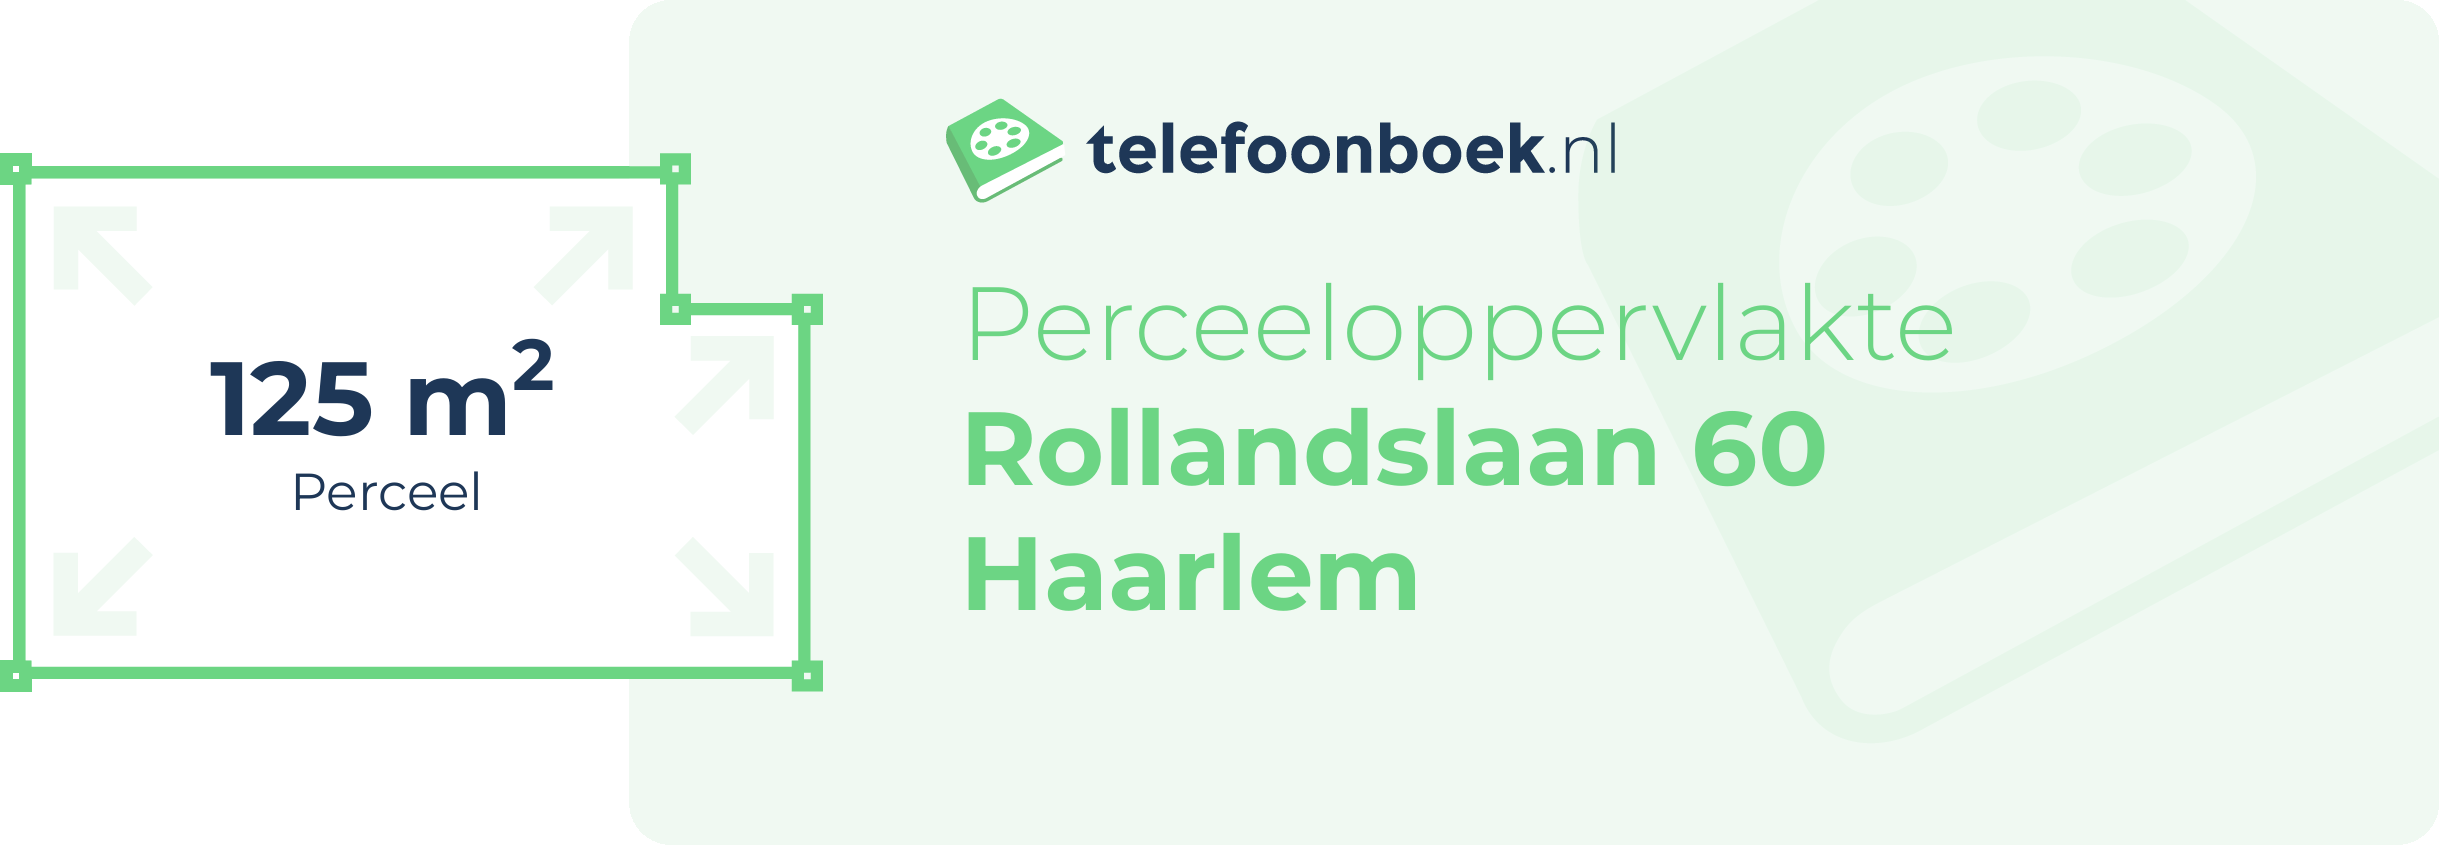 Perceeloppervlakte Rollandslaan 60 Haarlem